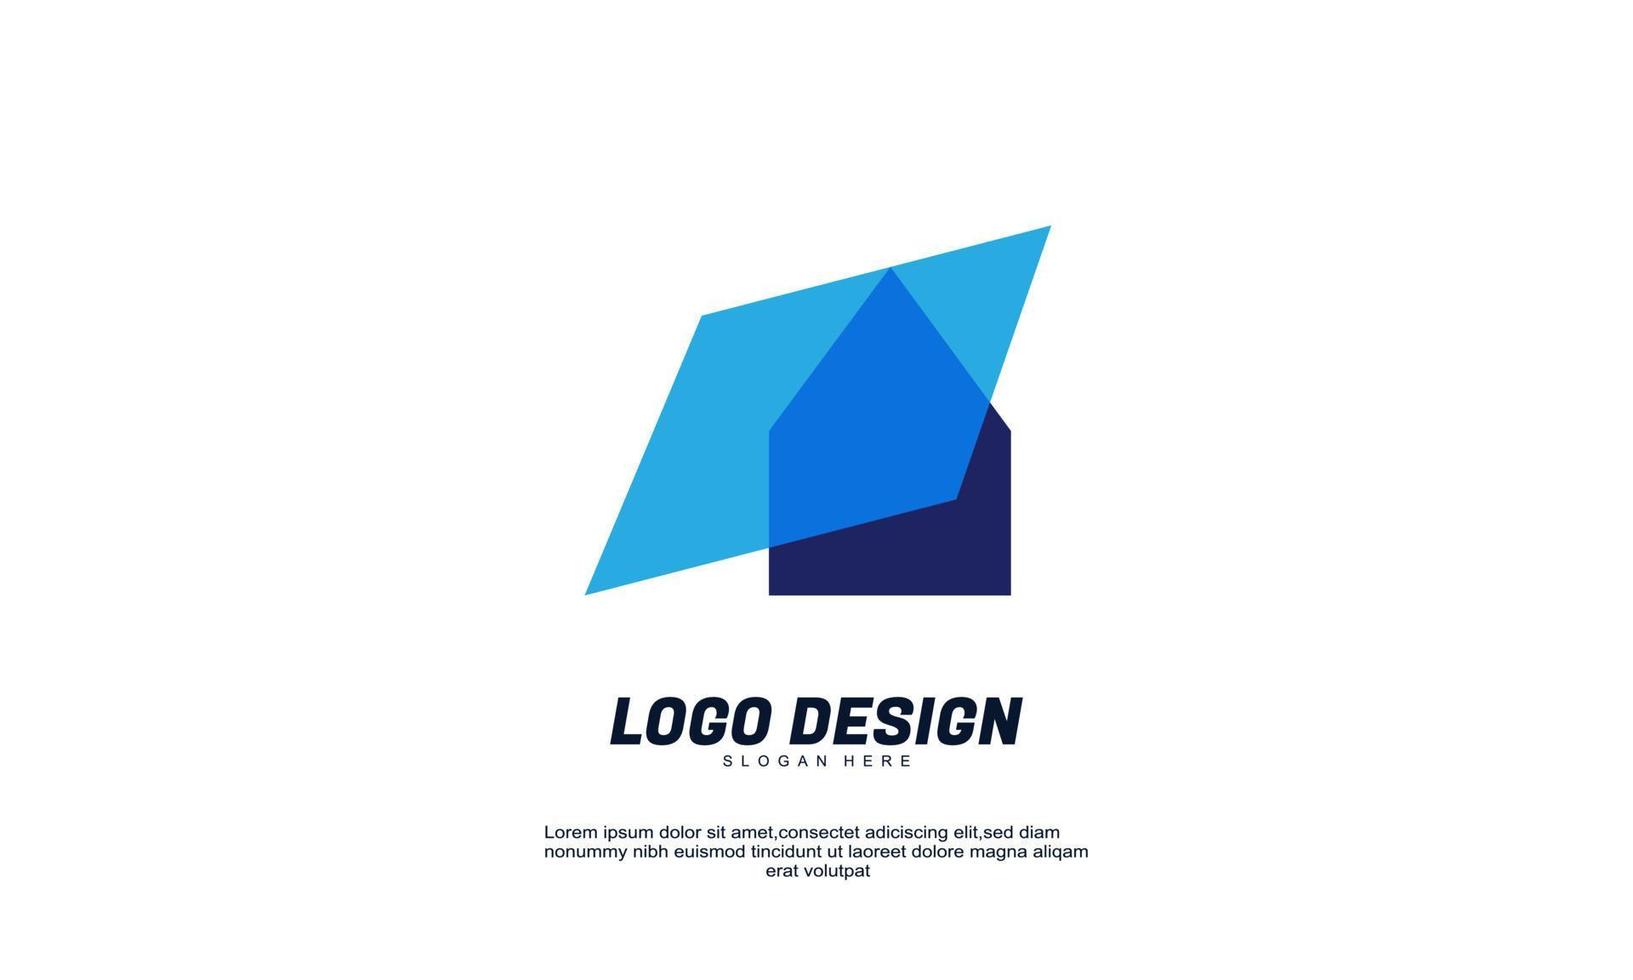 élément de logo de conception de société créative abstraite stock impressionnant avec modèle de carte de visite meilleur pour l'identité de la marque et le vecteur de logo